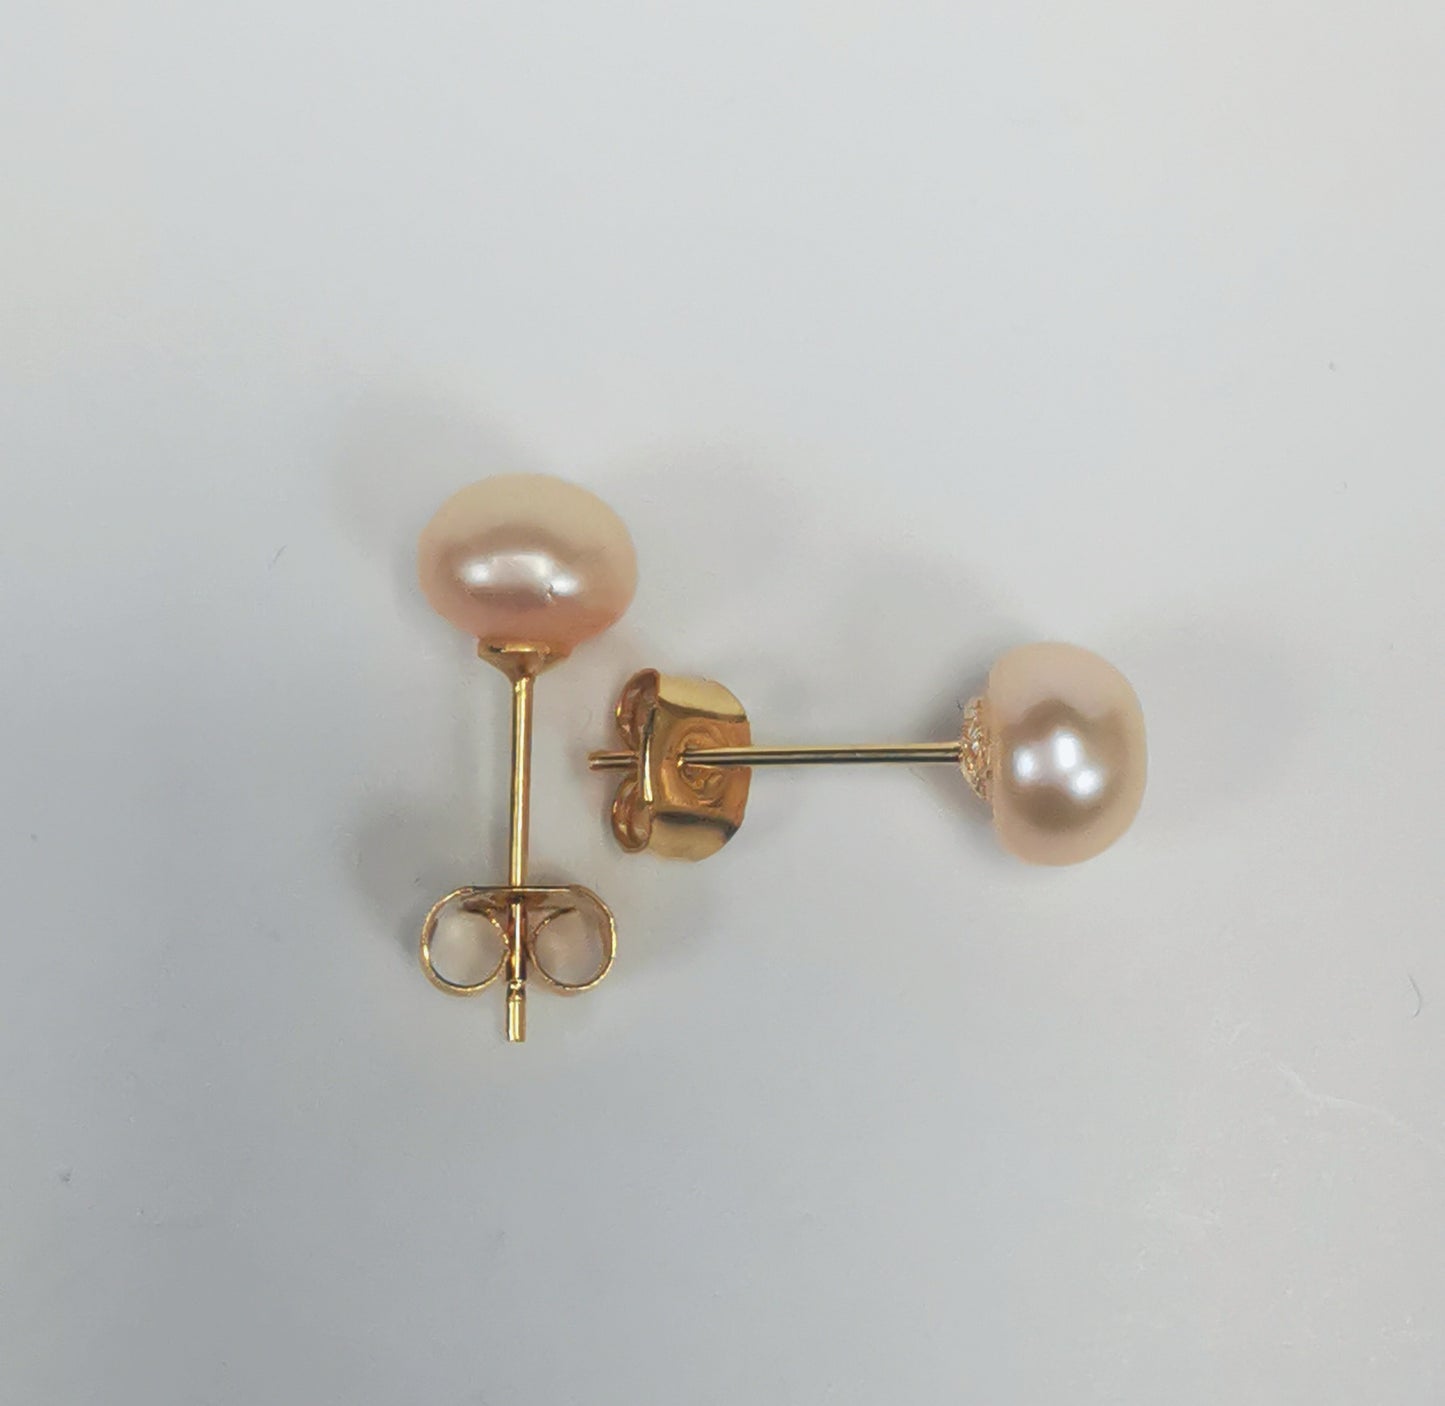 Boucles d'oreilles perles de culture rose 7mm sur clous plaqués or. Présentées perpendiculairement, boucle droite verticale, perle en haut, boucle de droite horizontale, perle à droite, sur un fond blanc. Vue de dessus.